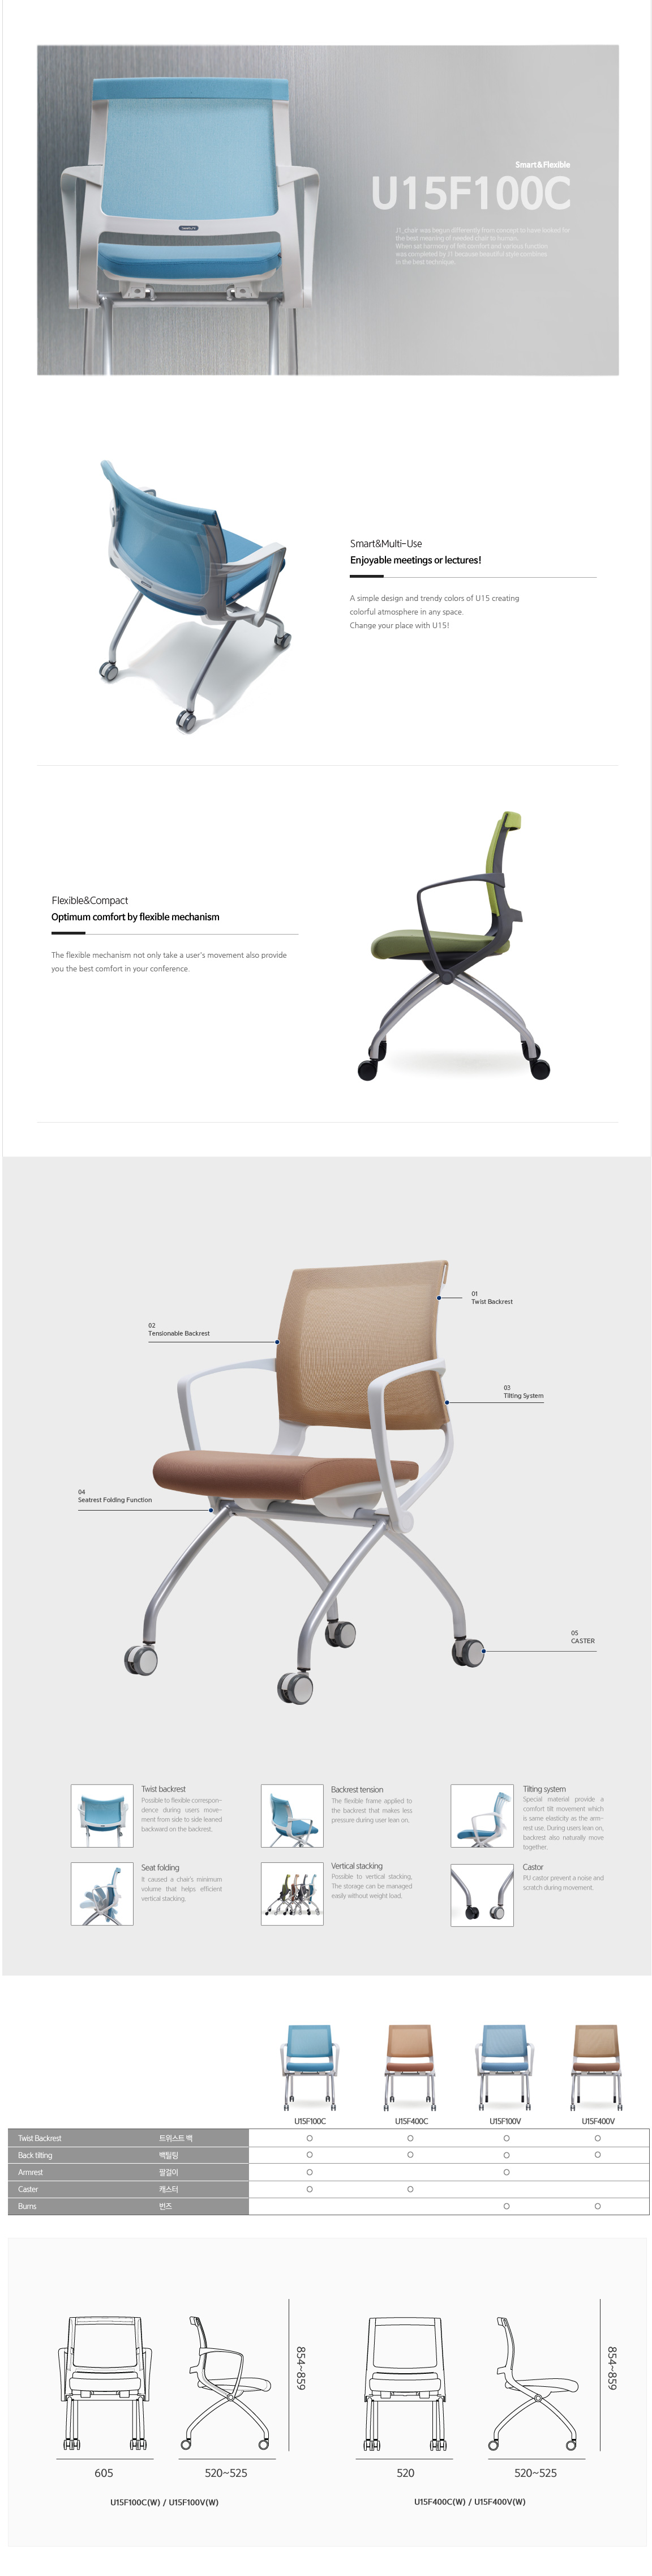 Luxdezine Multipurpose Chairs U15F100C